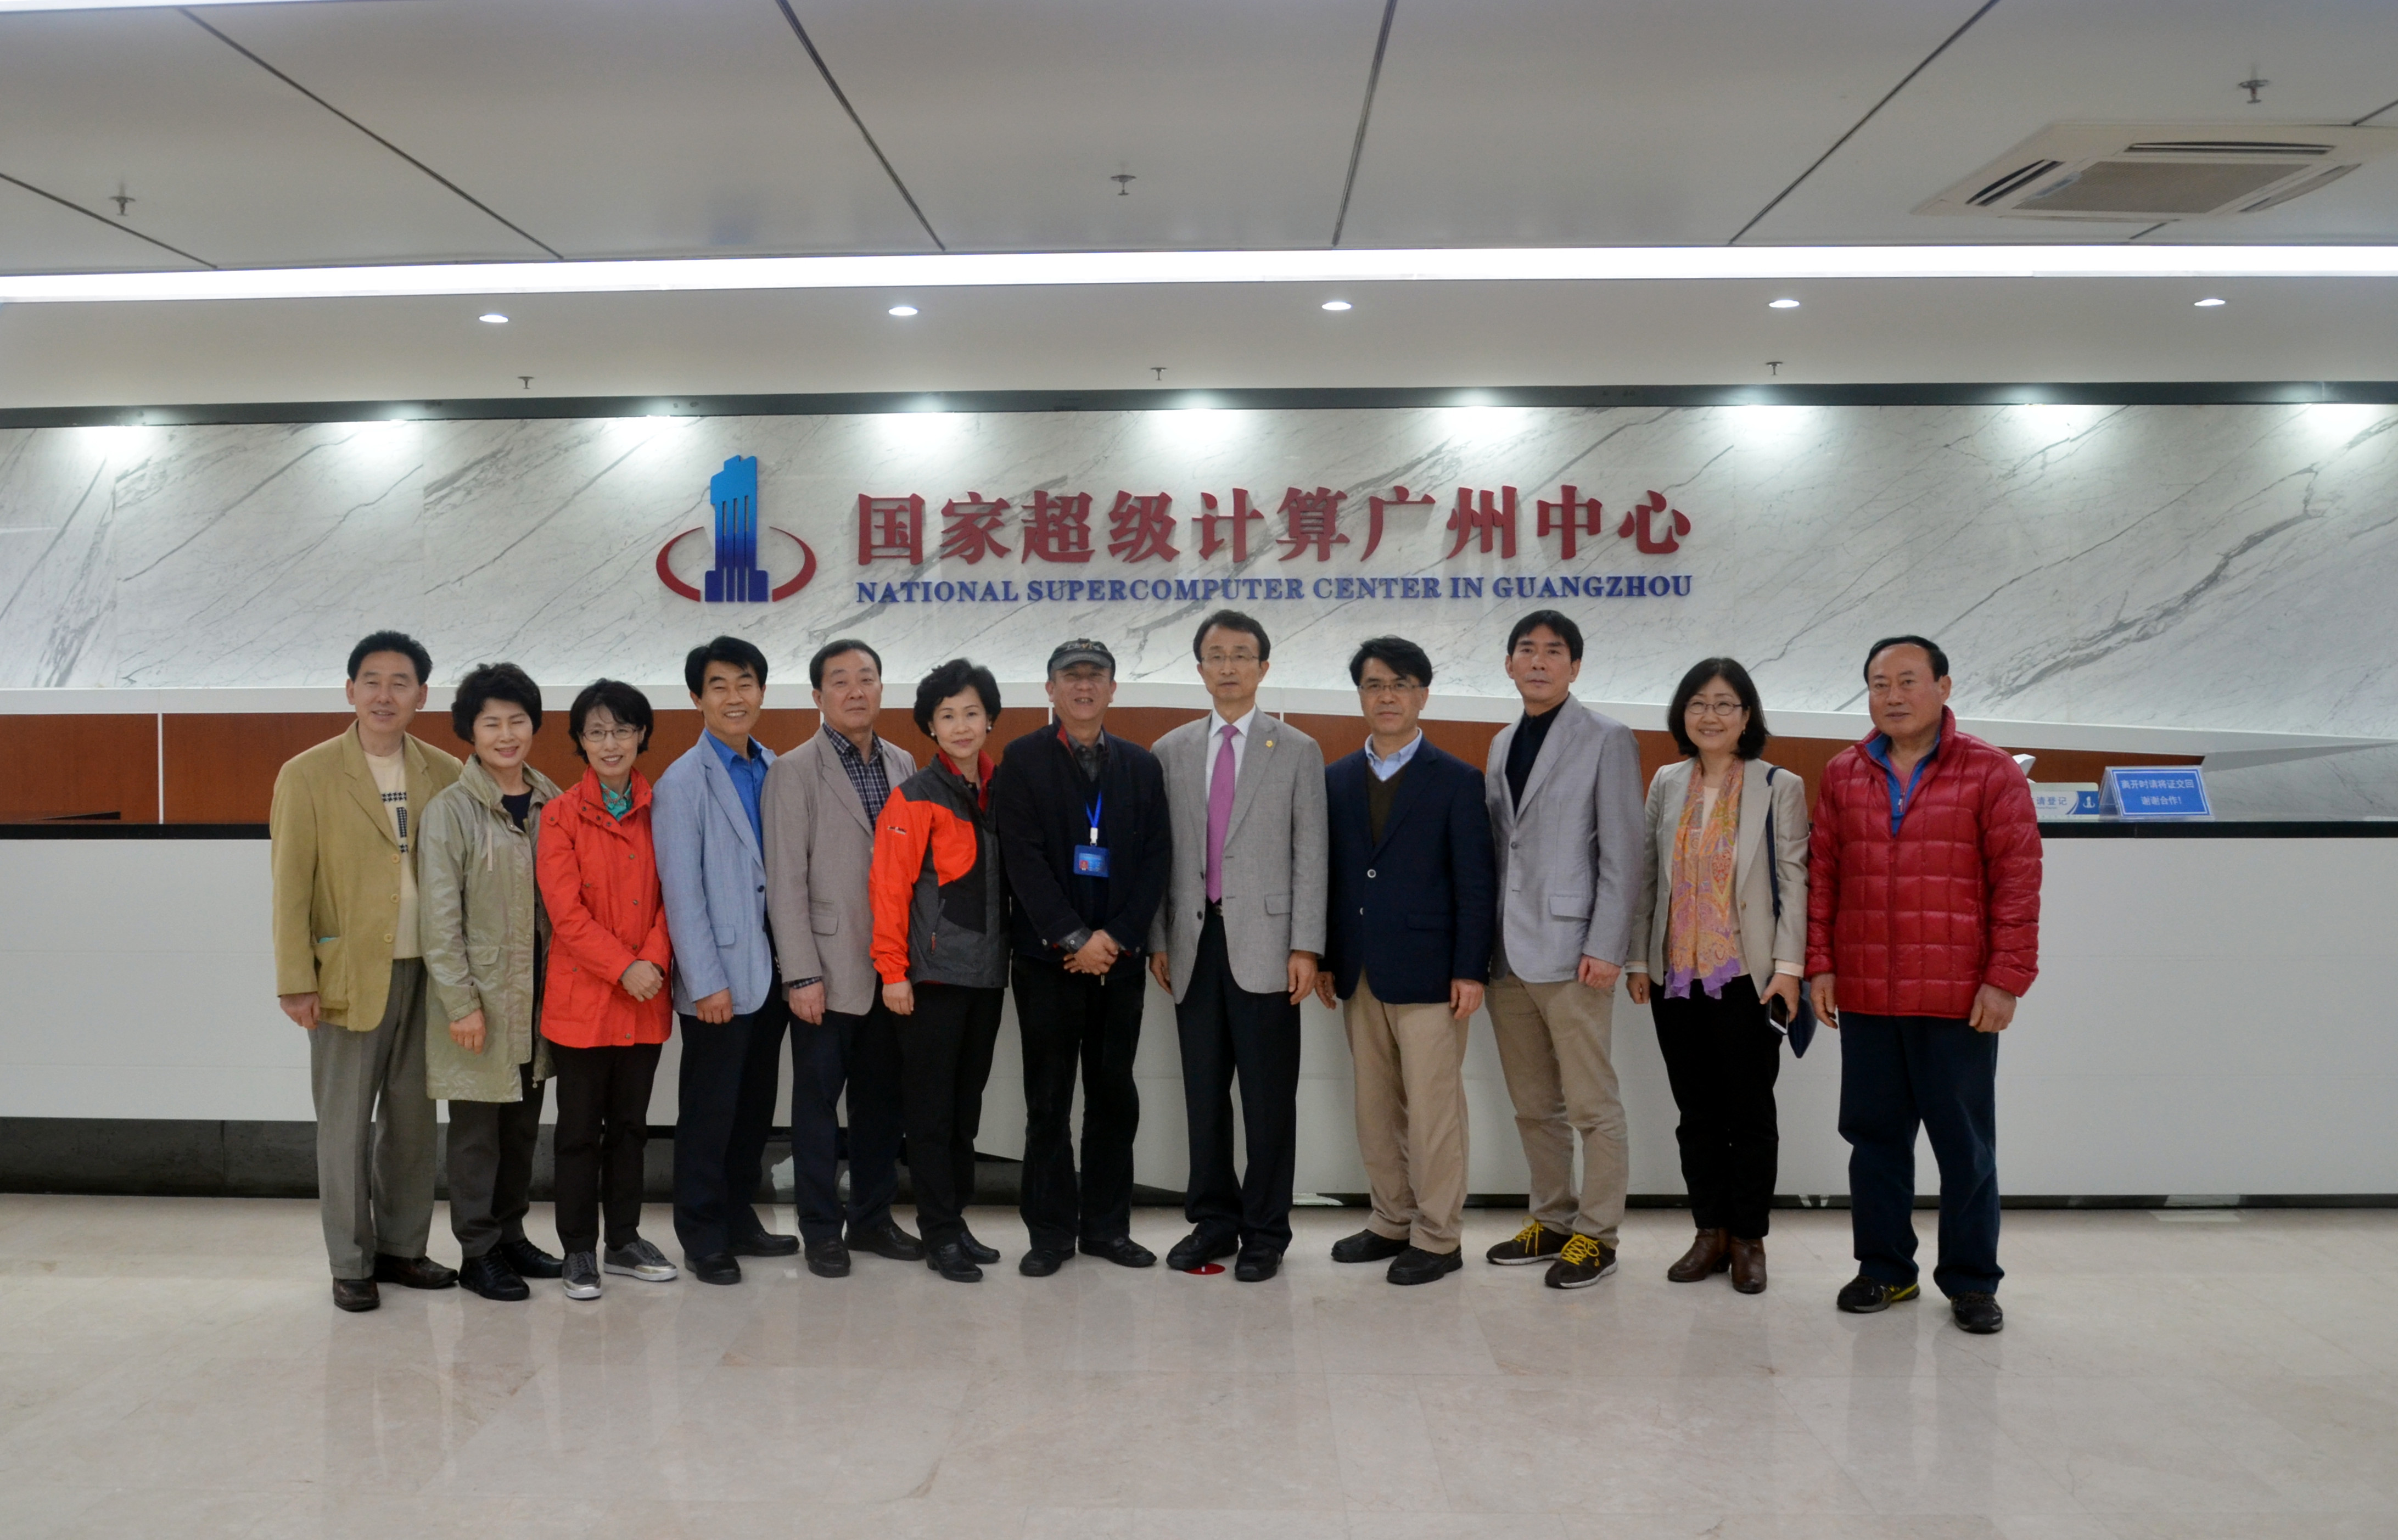 韩国首尔松坡区议会代表团到访广州超算中心